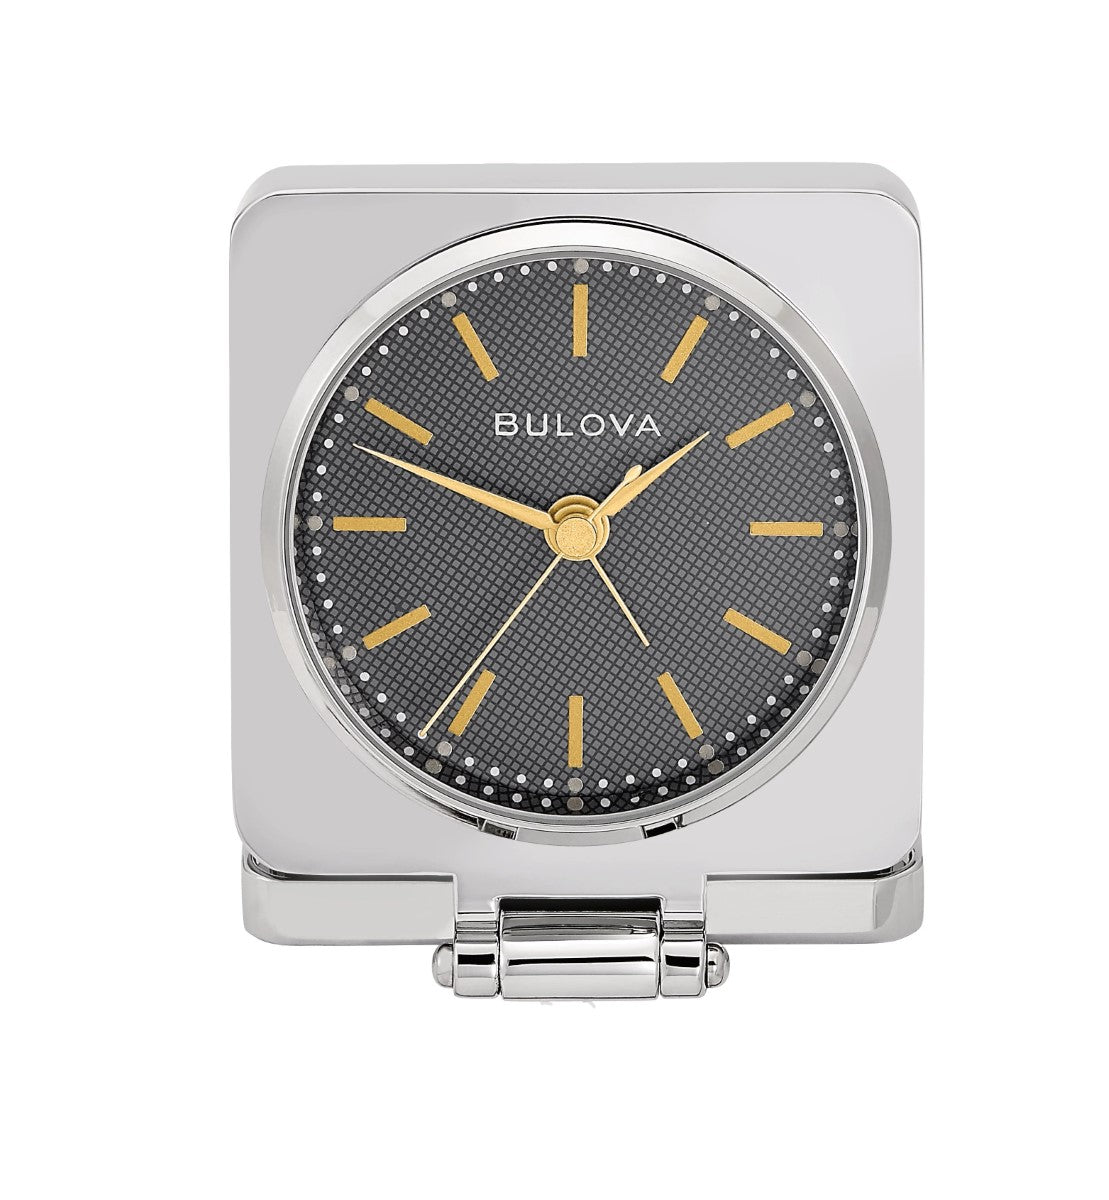 Bulova B1879 Traveler Flip Cover Tabletop Alarm Clock